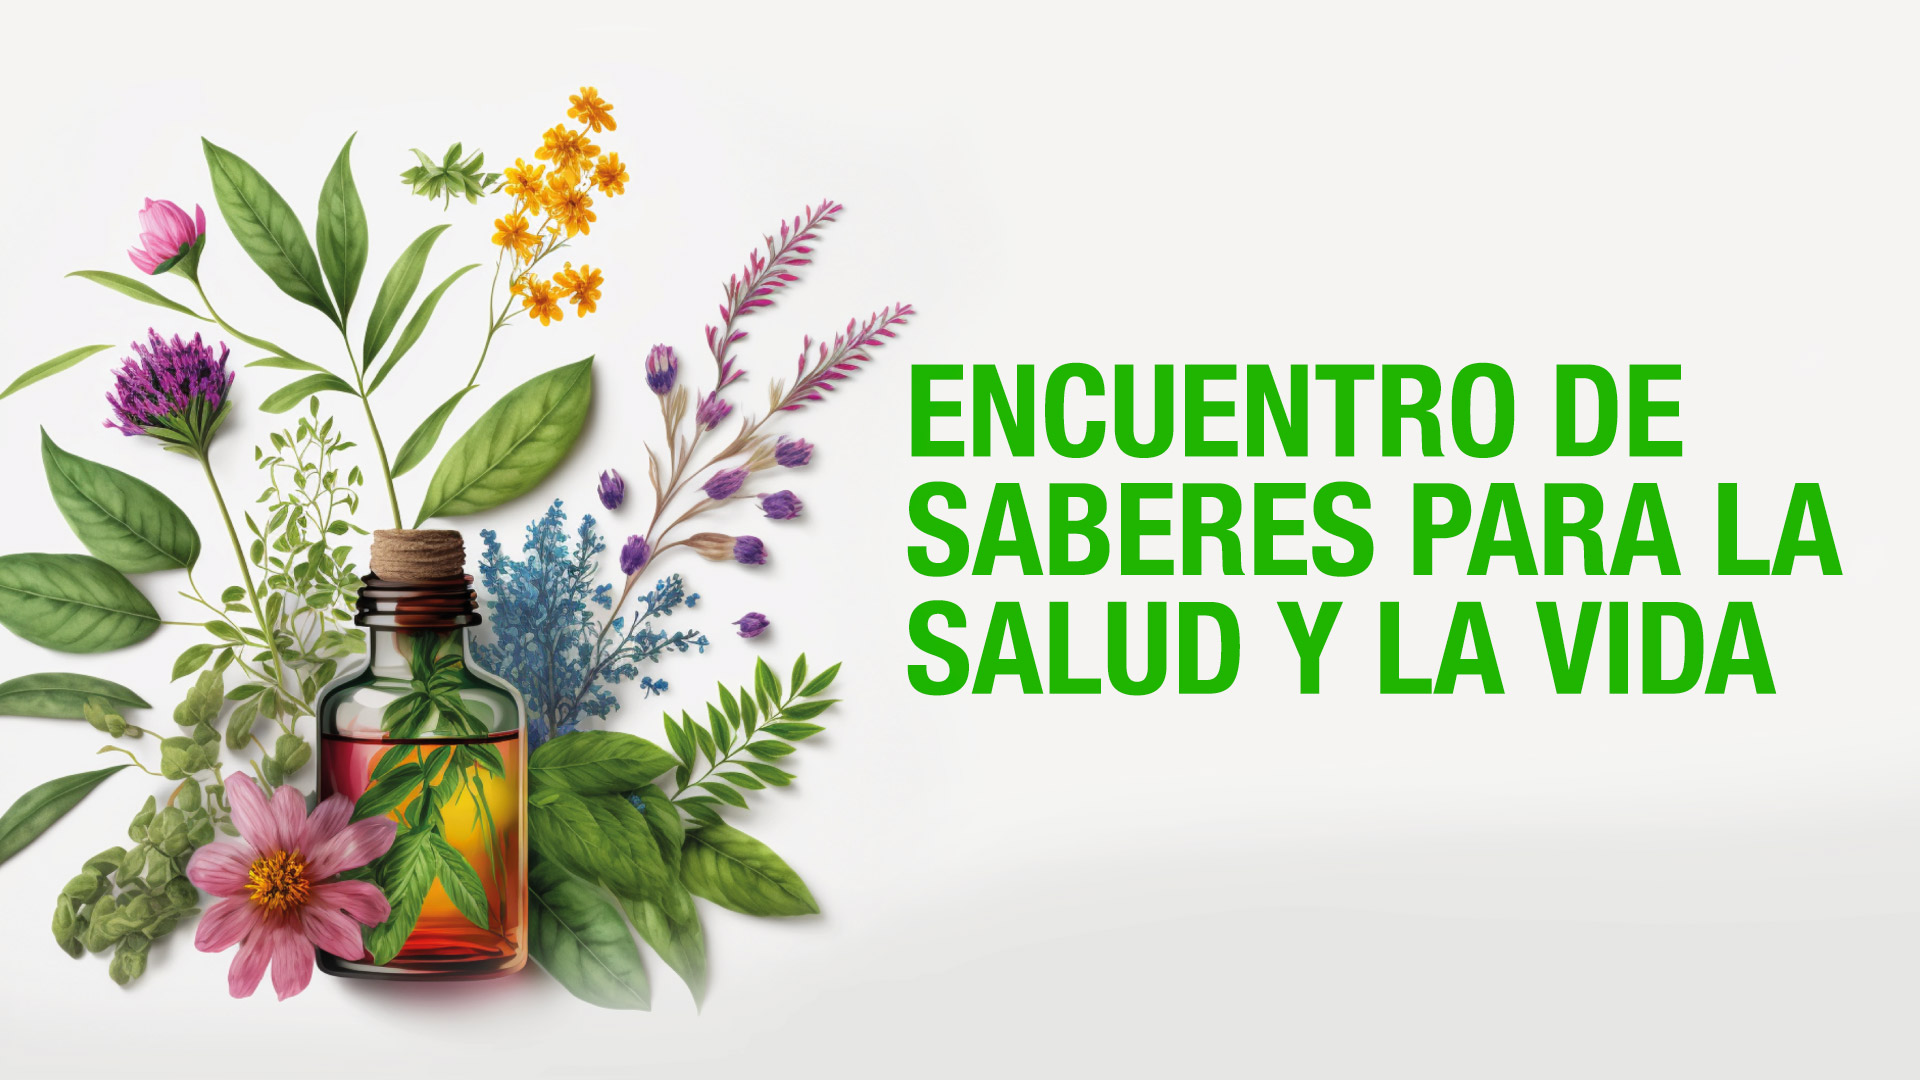 Esta semana se realizará el Congreso Latinoamericano de Plantas Medicinales